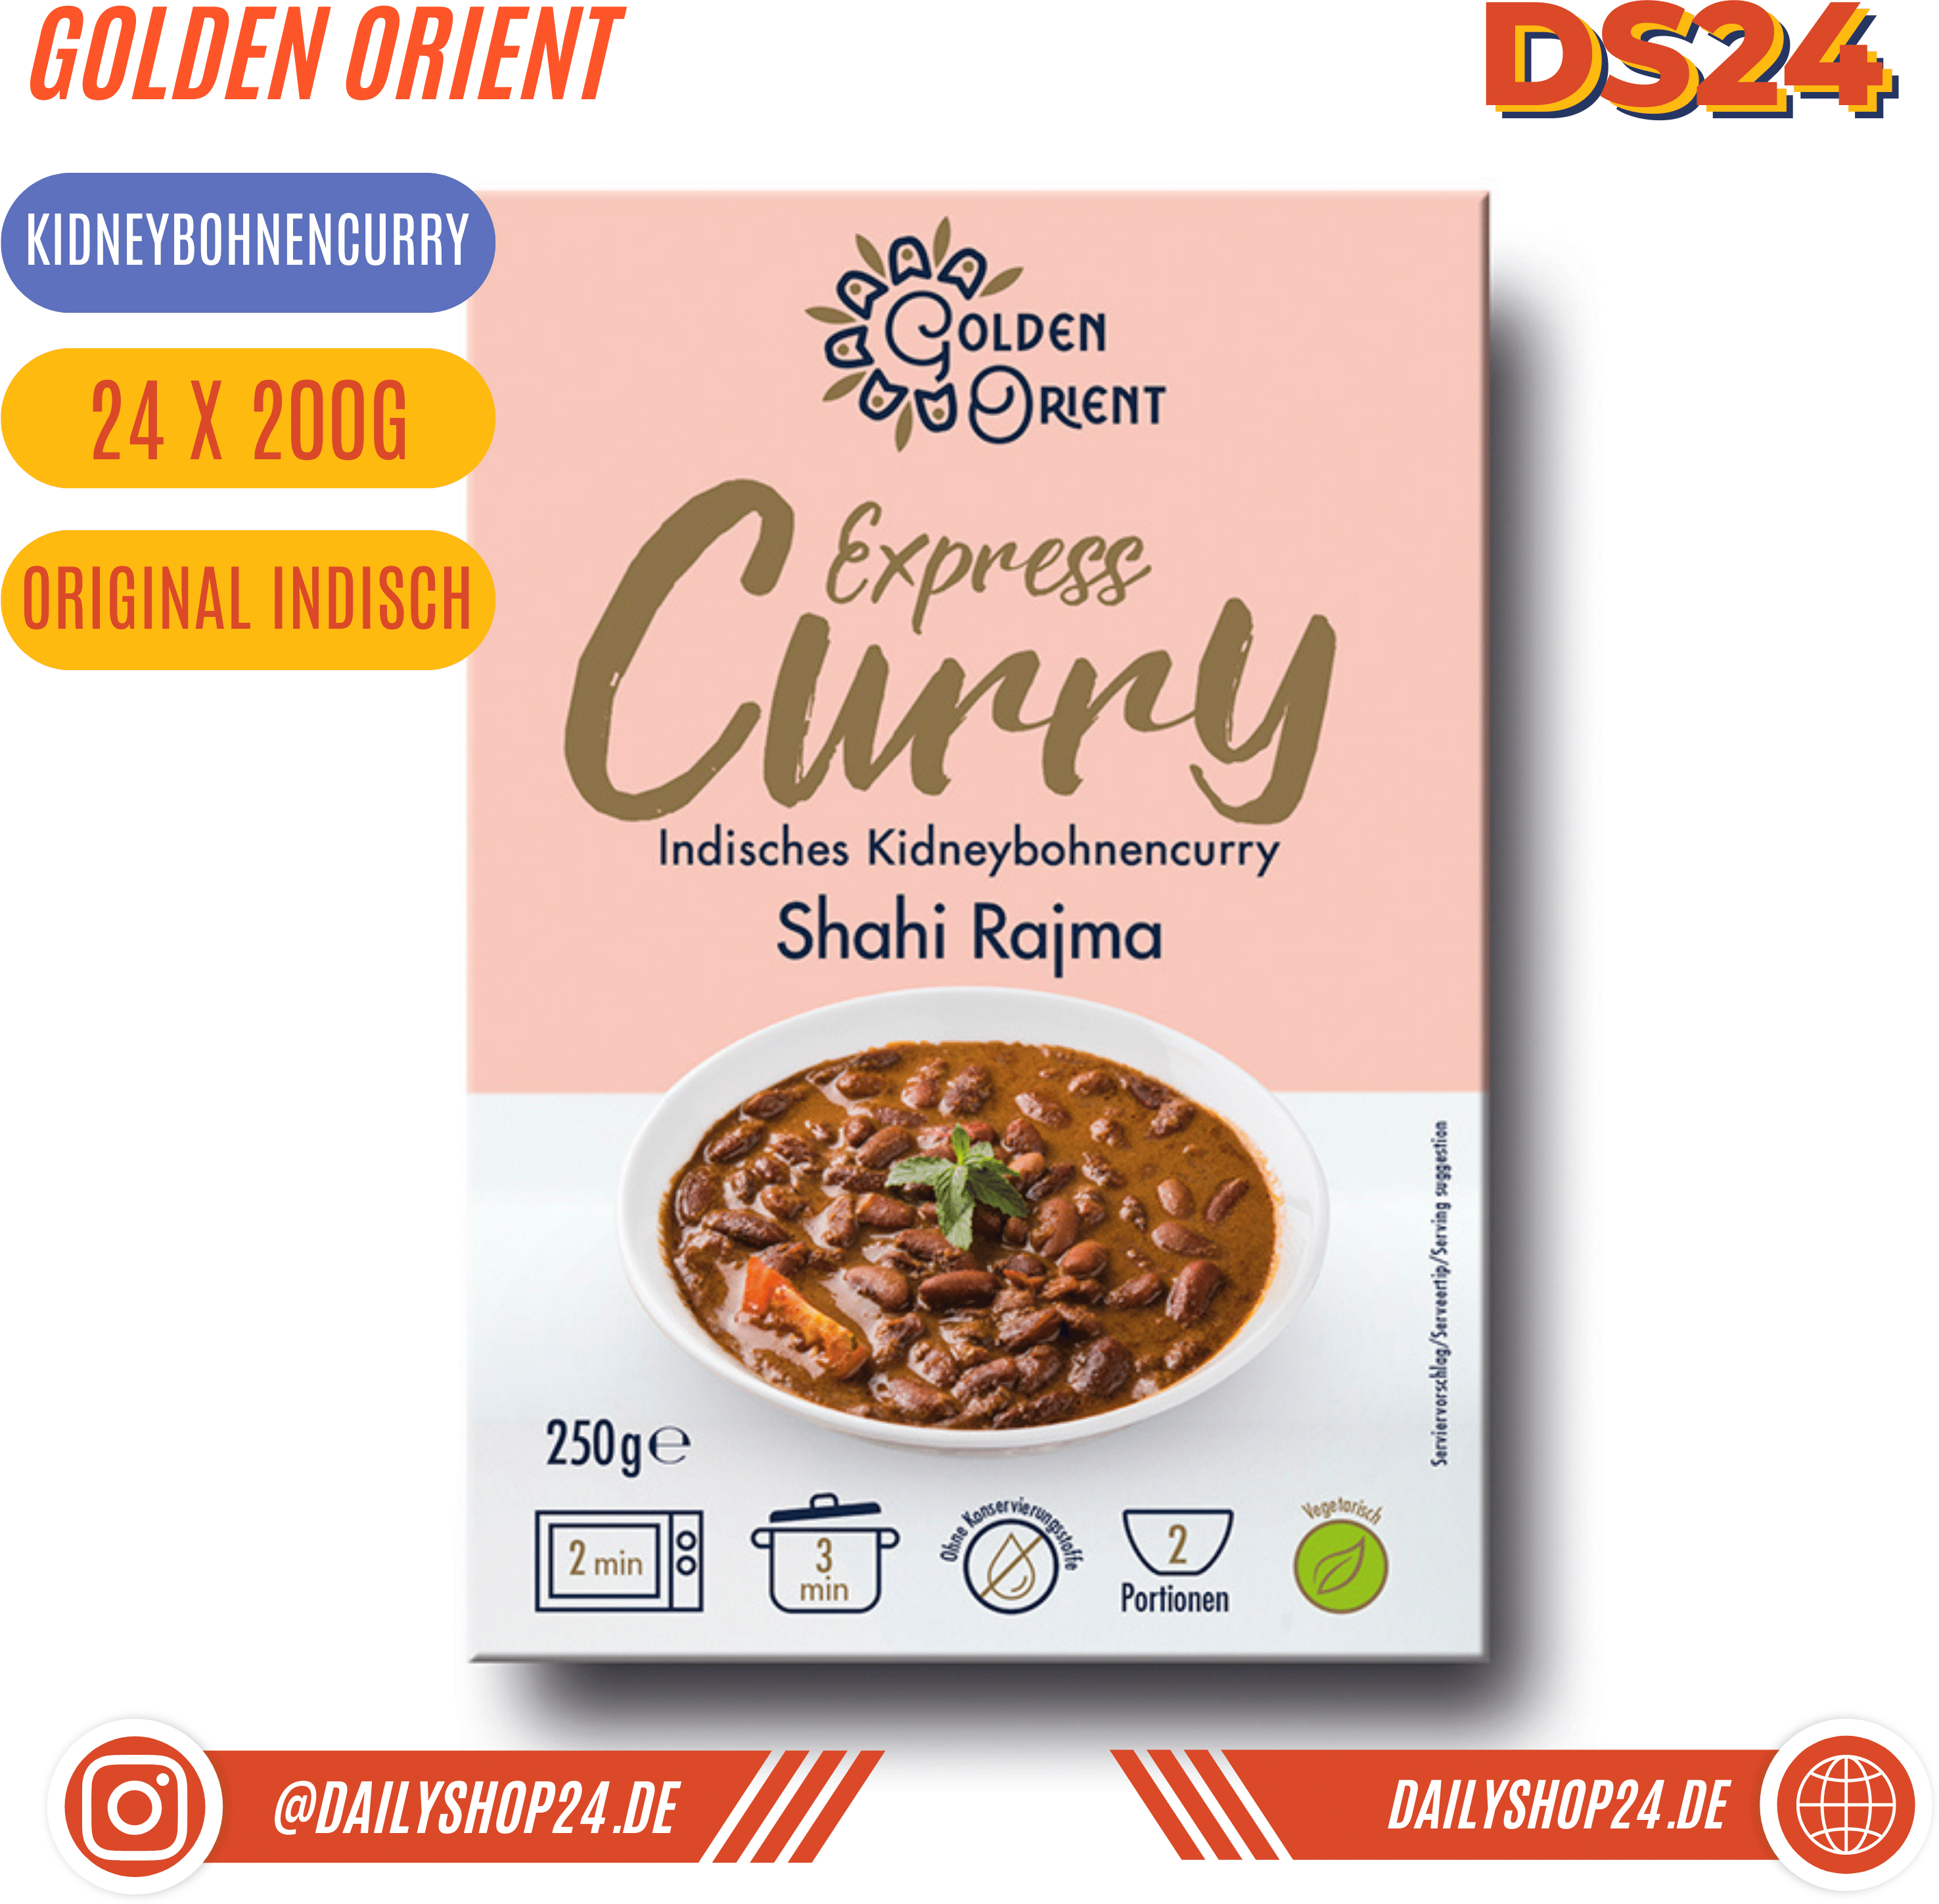 Golden Orient Ready Meals - 24 / Kidneybohnen Curry